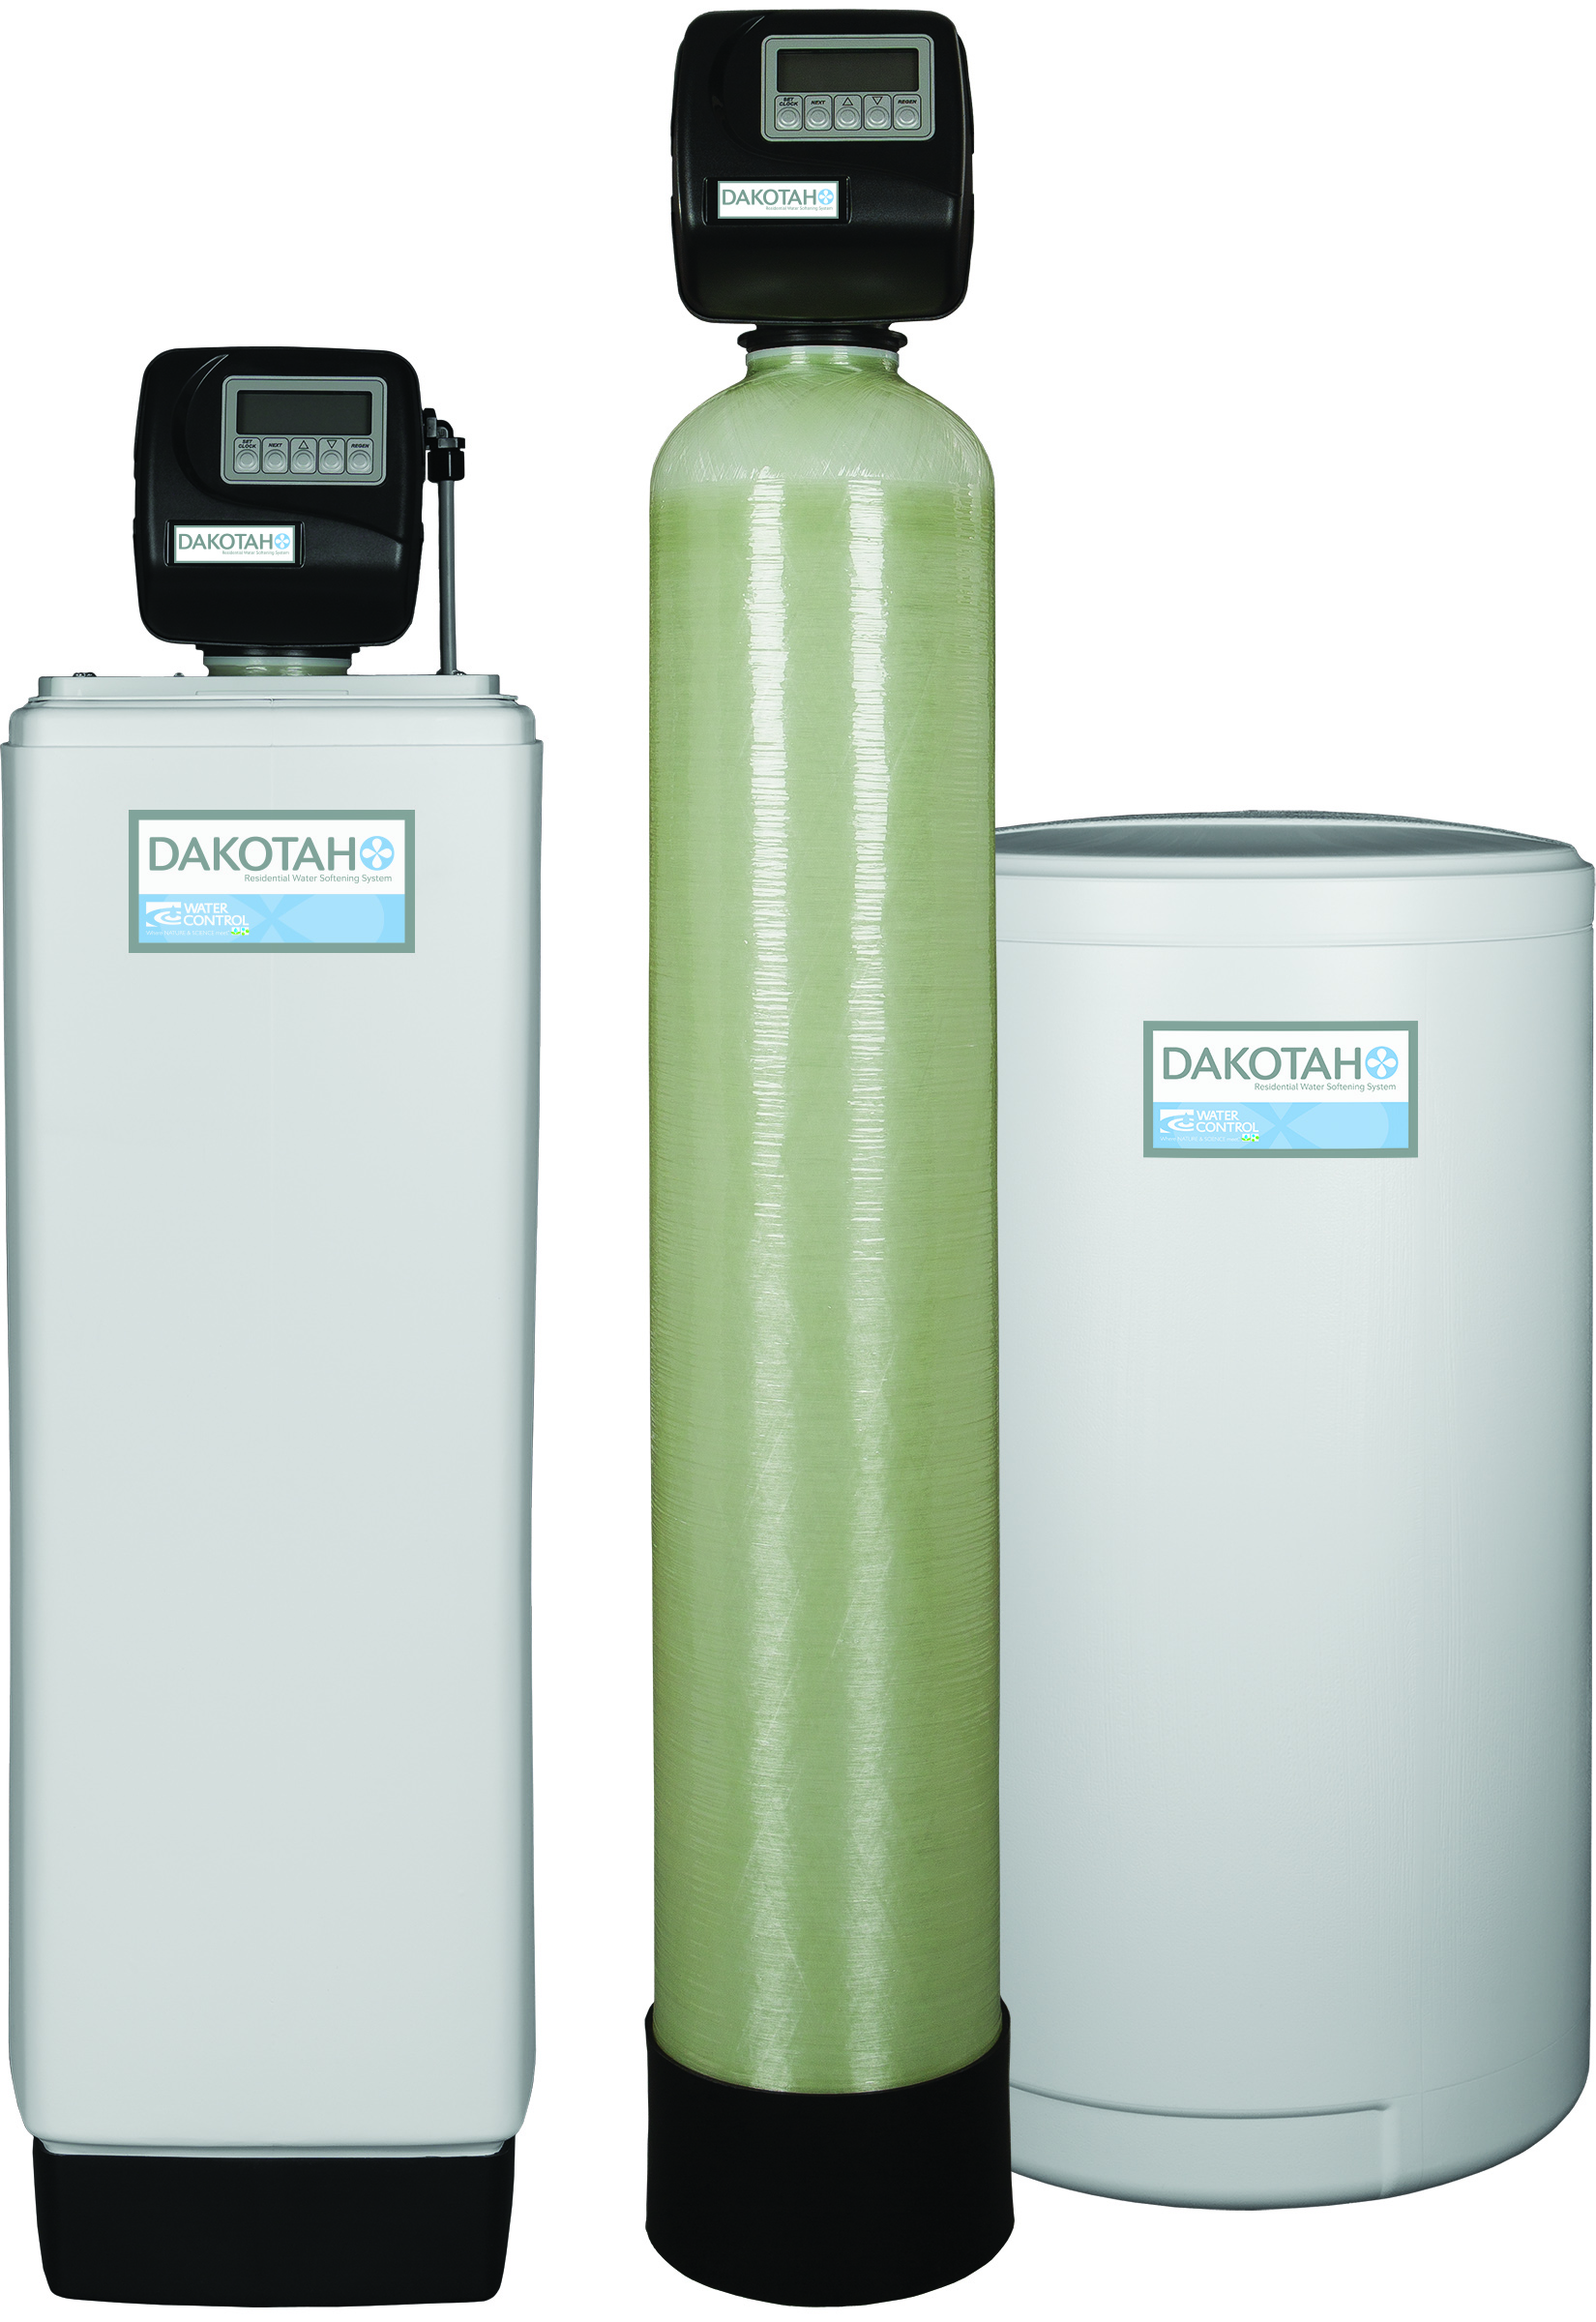 Dakotah Series Water Softeners